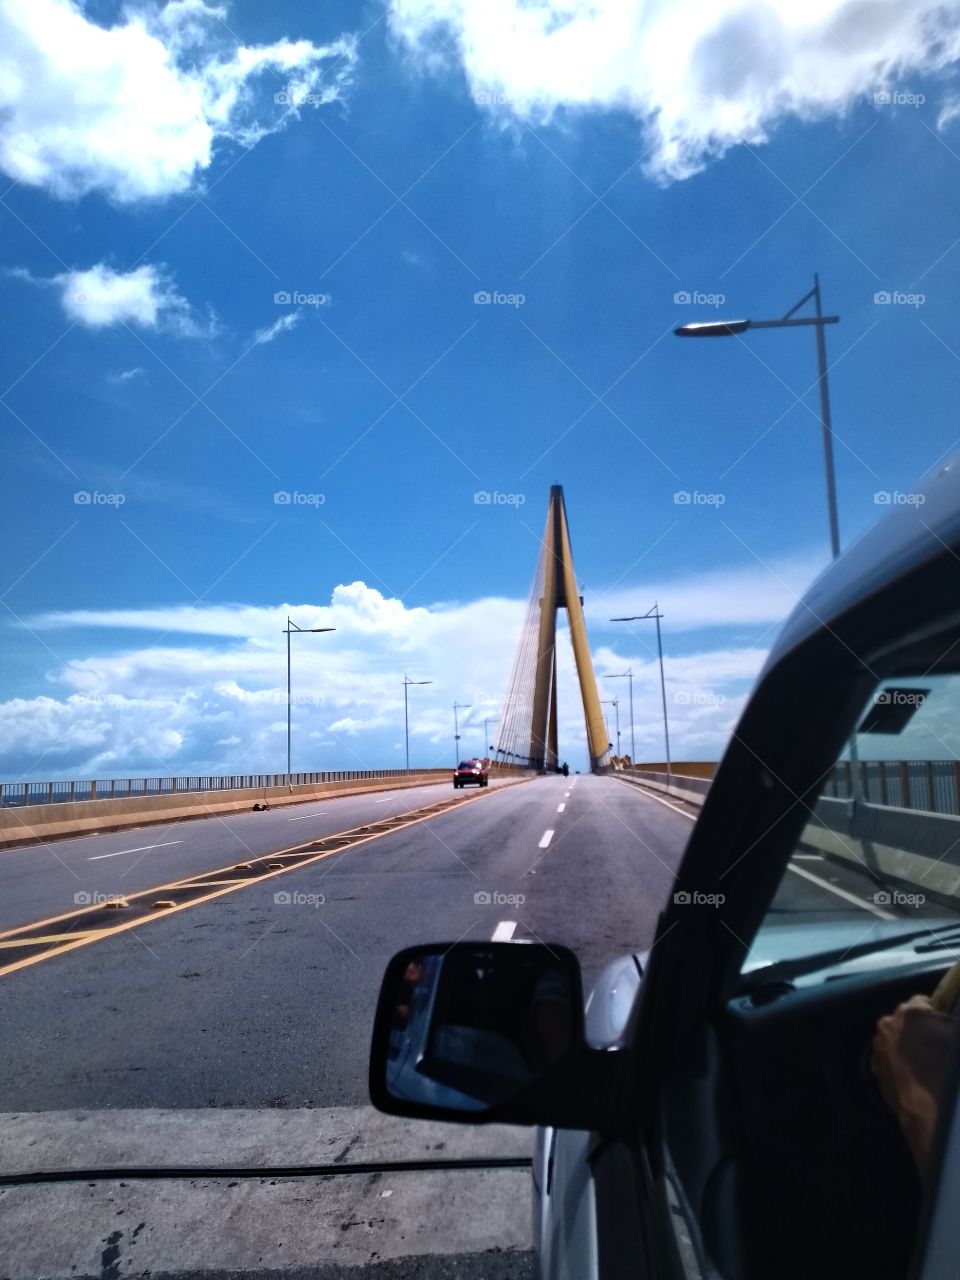 Road. Bridge.